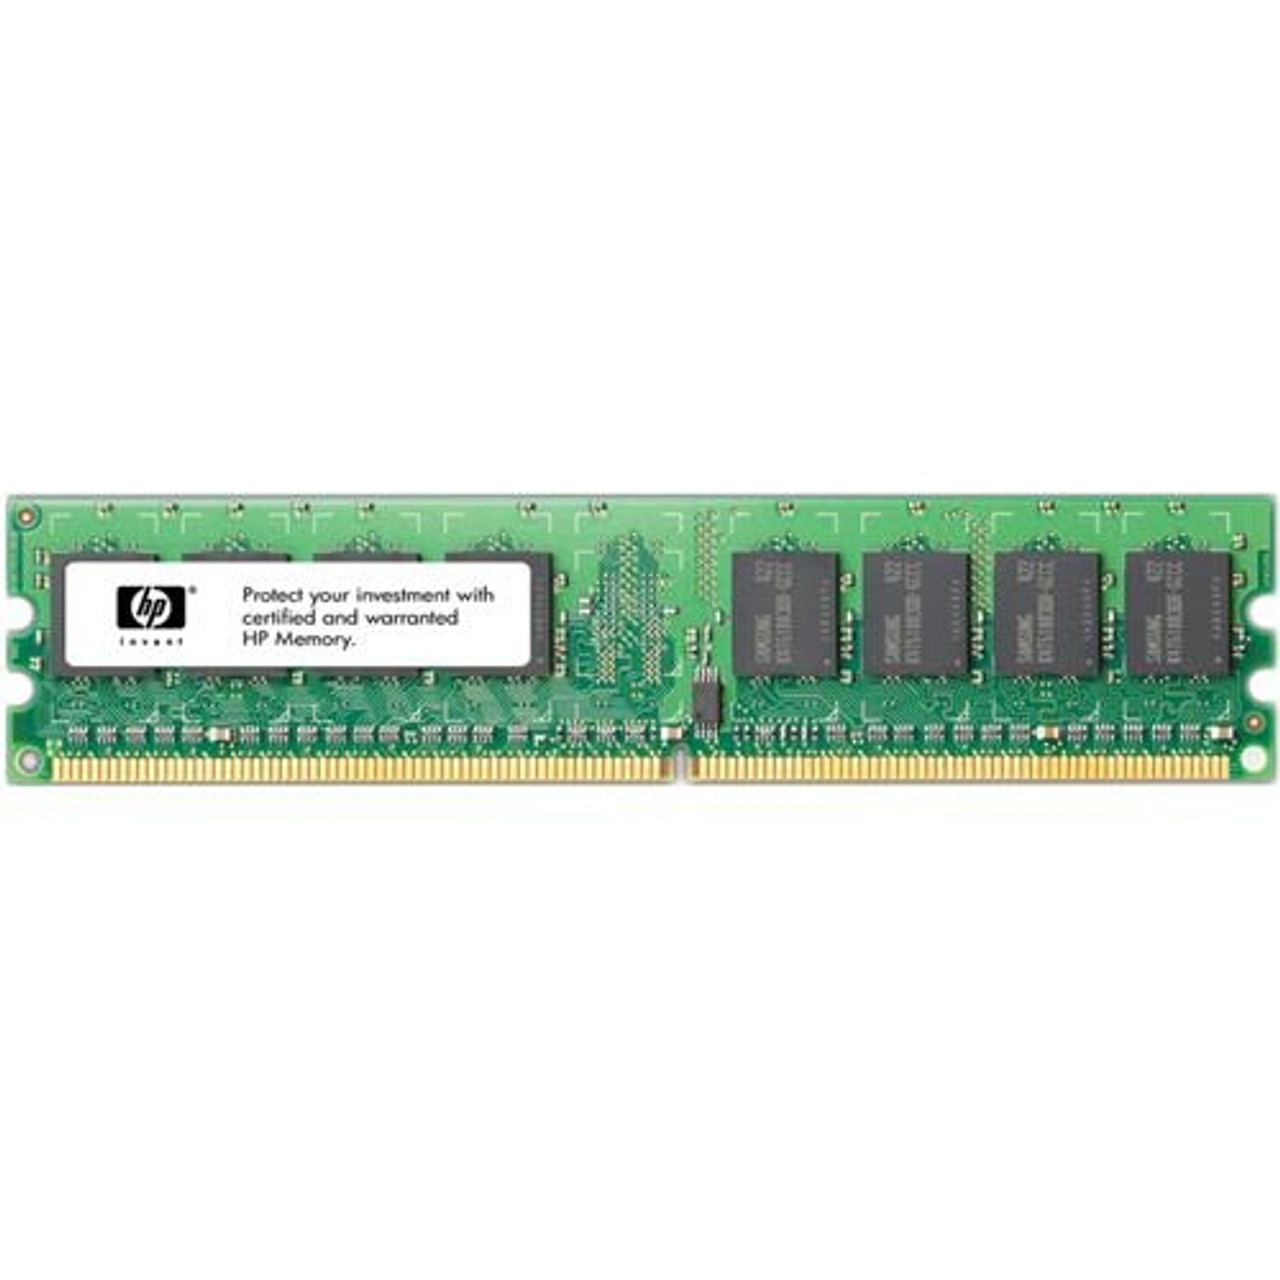 PK264AV HP 512MB DDR2 SDRAM Memory Module